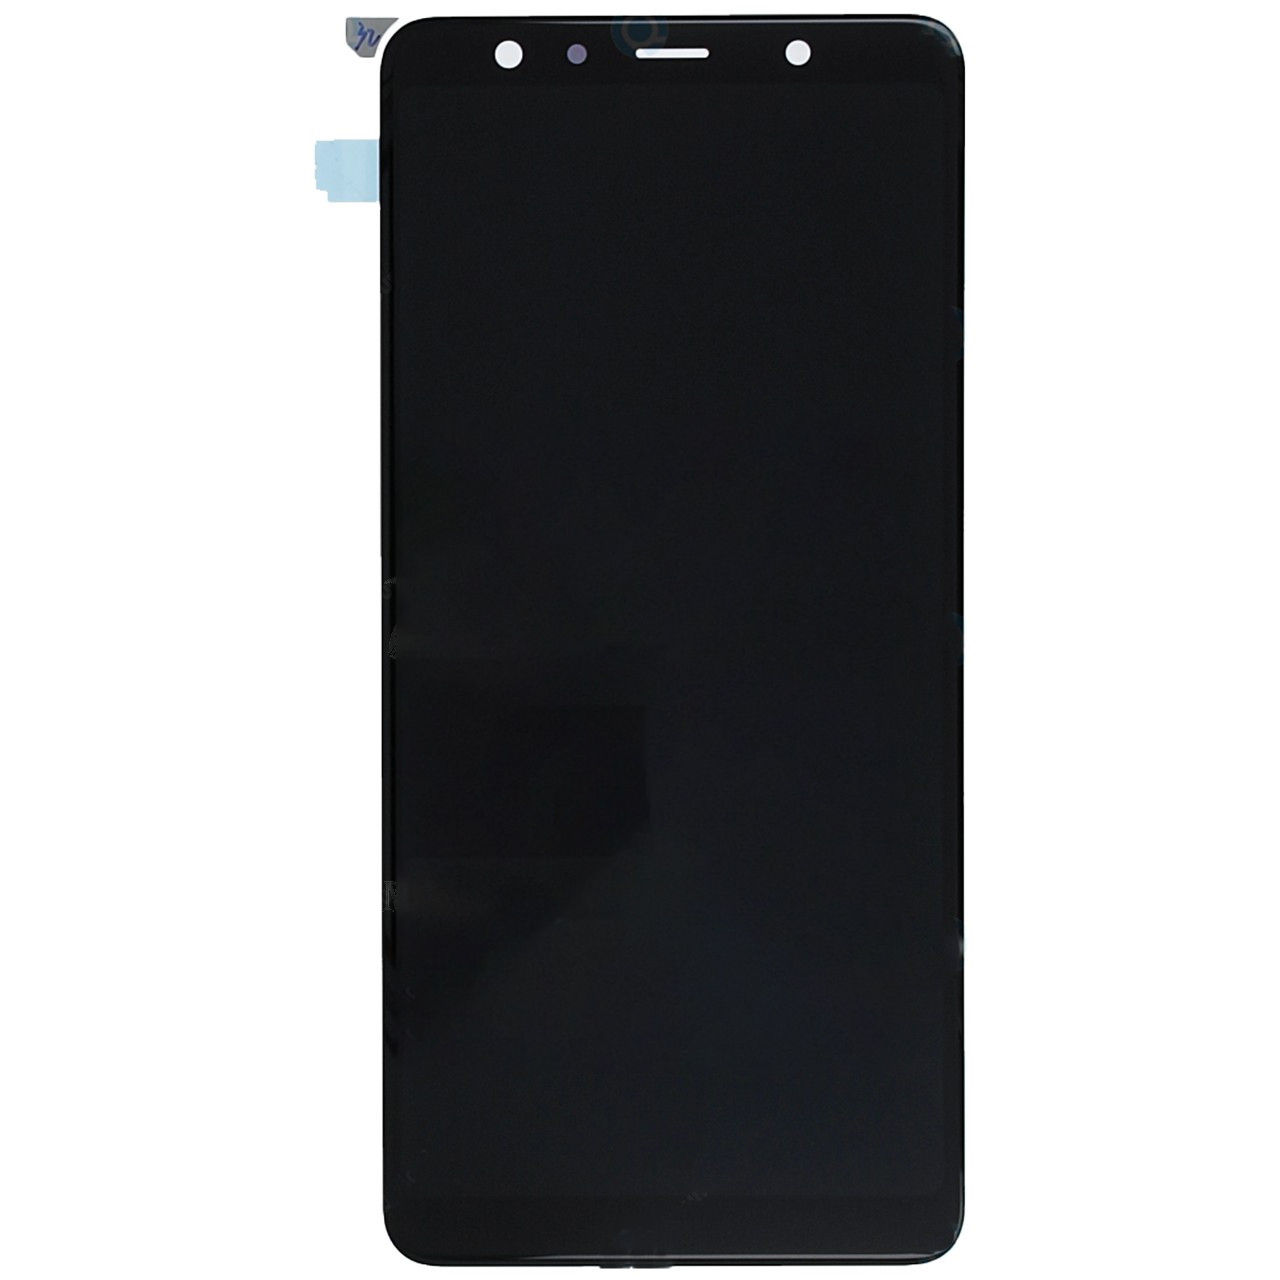 Дисплей + сенсор (модуль) экран Samsung A750 Galaxy A7 2018 черный OLED High Copy